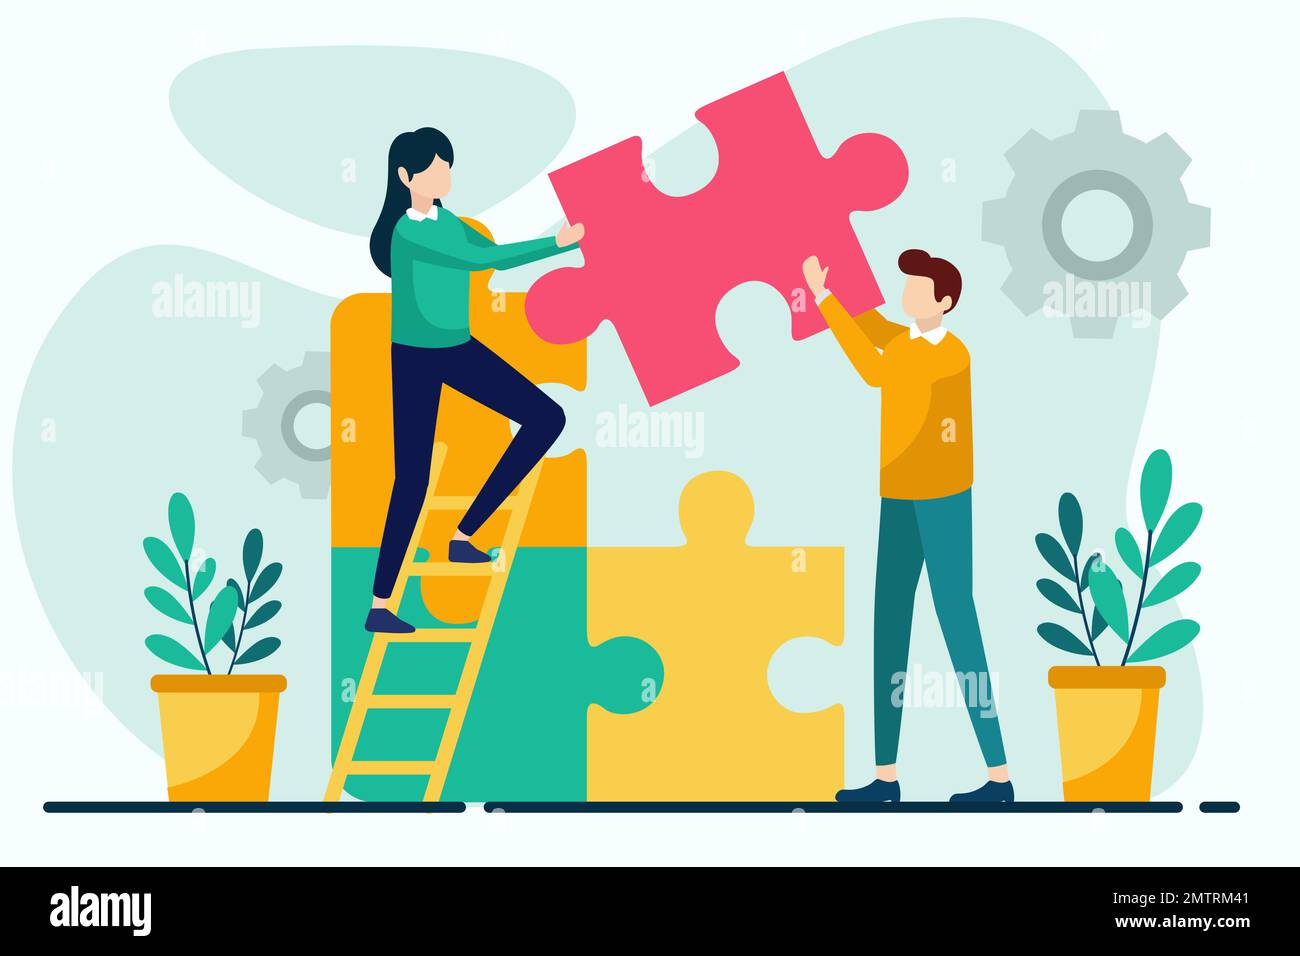 Vektordarstellung im Teamwork-Konzept im flachen Stil. Mann und Frau, die Puzzles zusammenstellen. Teamarbeit, Partnerschaft, Zusammenarbeit, Geschäftsleitung Stock Vektor